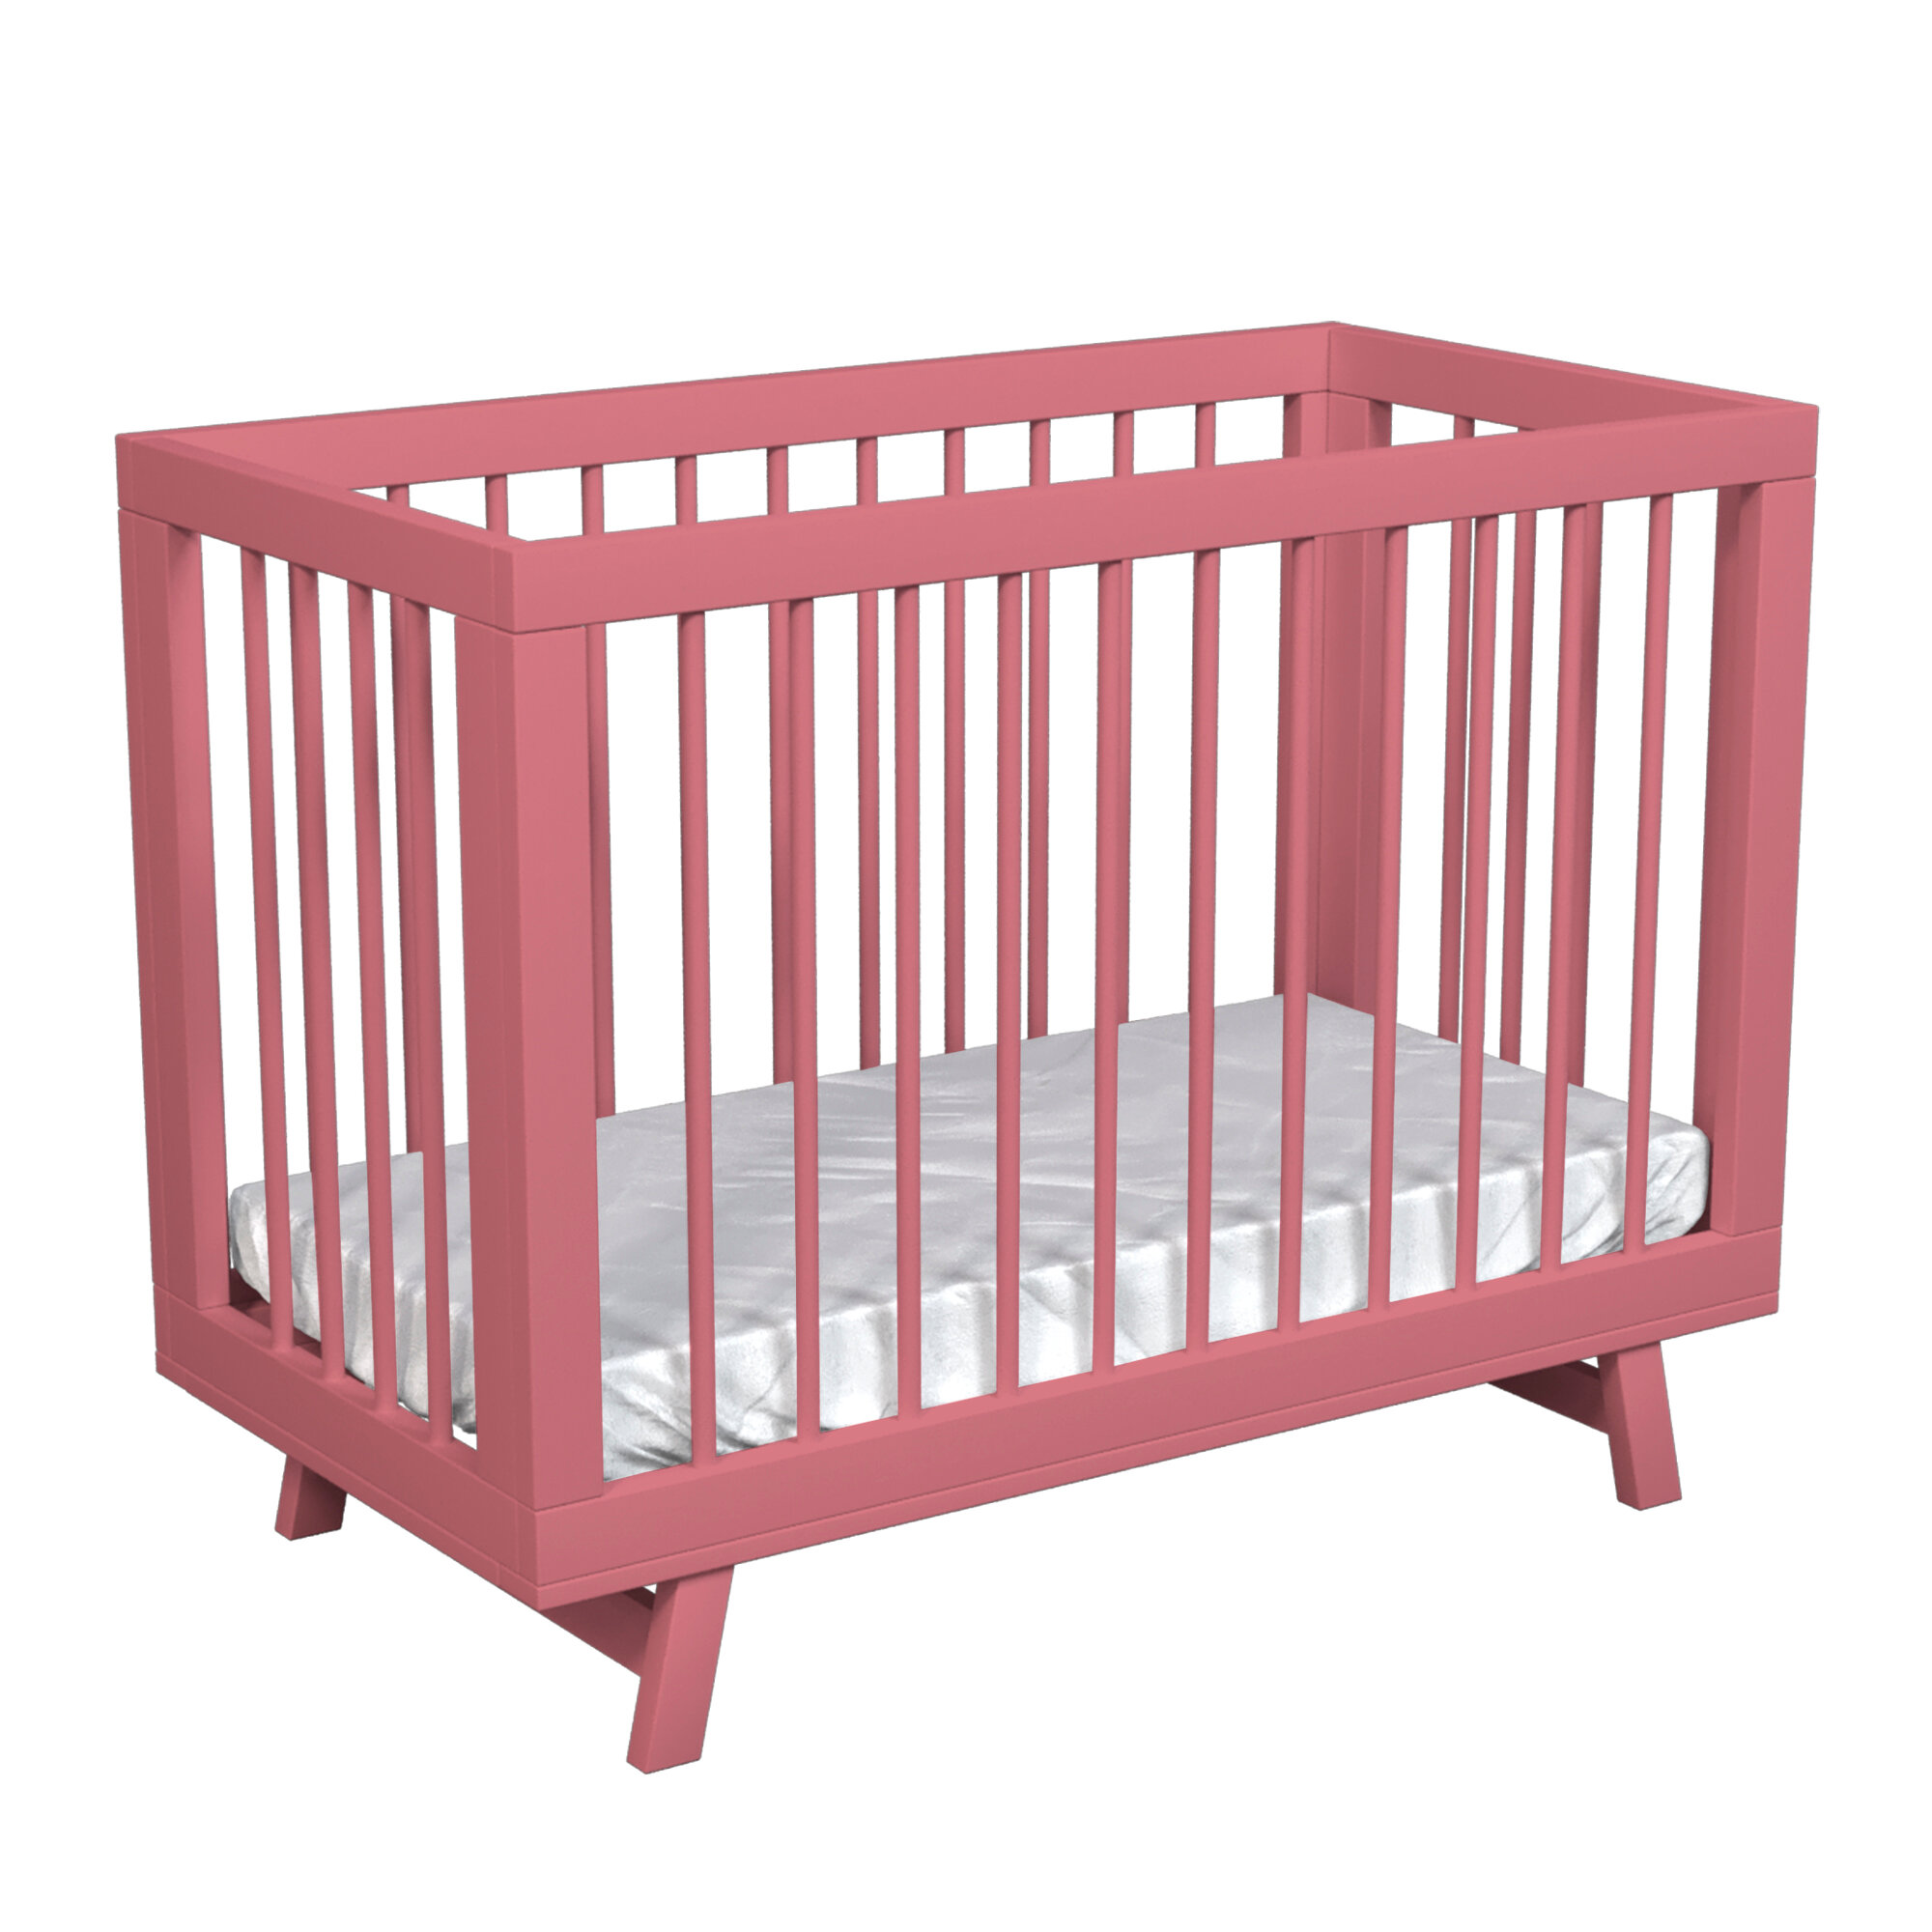 Кроватка для новорожденного Lilla - модель Aria Antique Pink 4102387